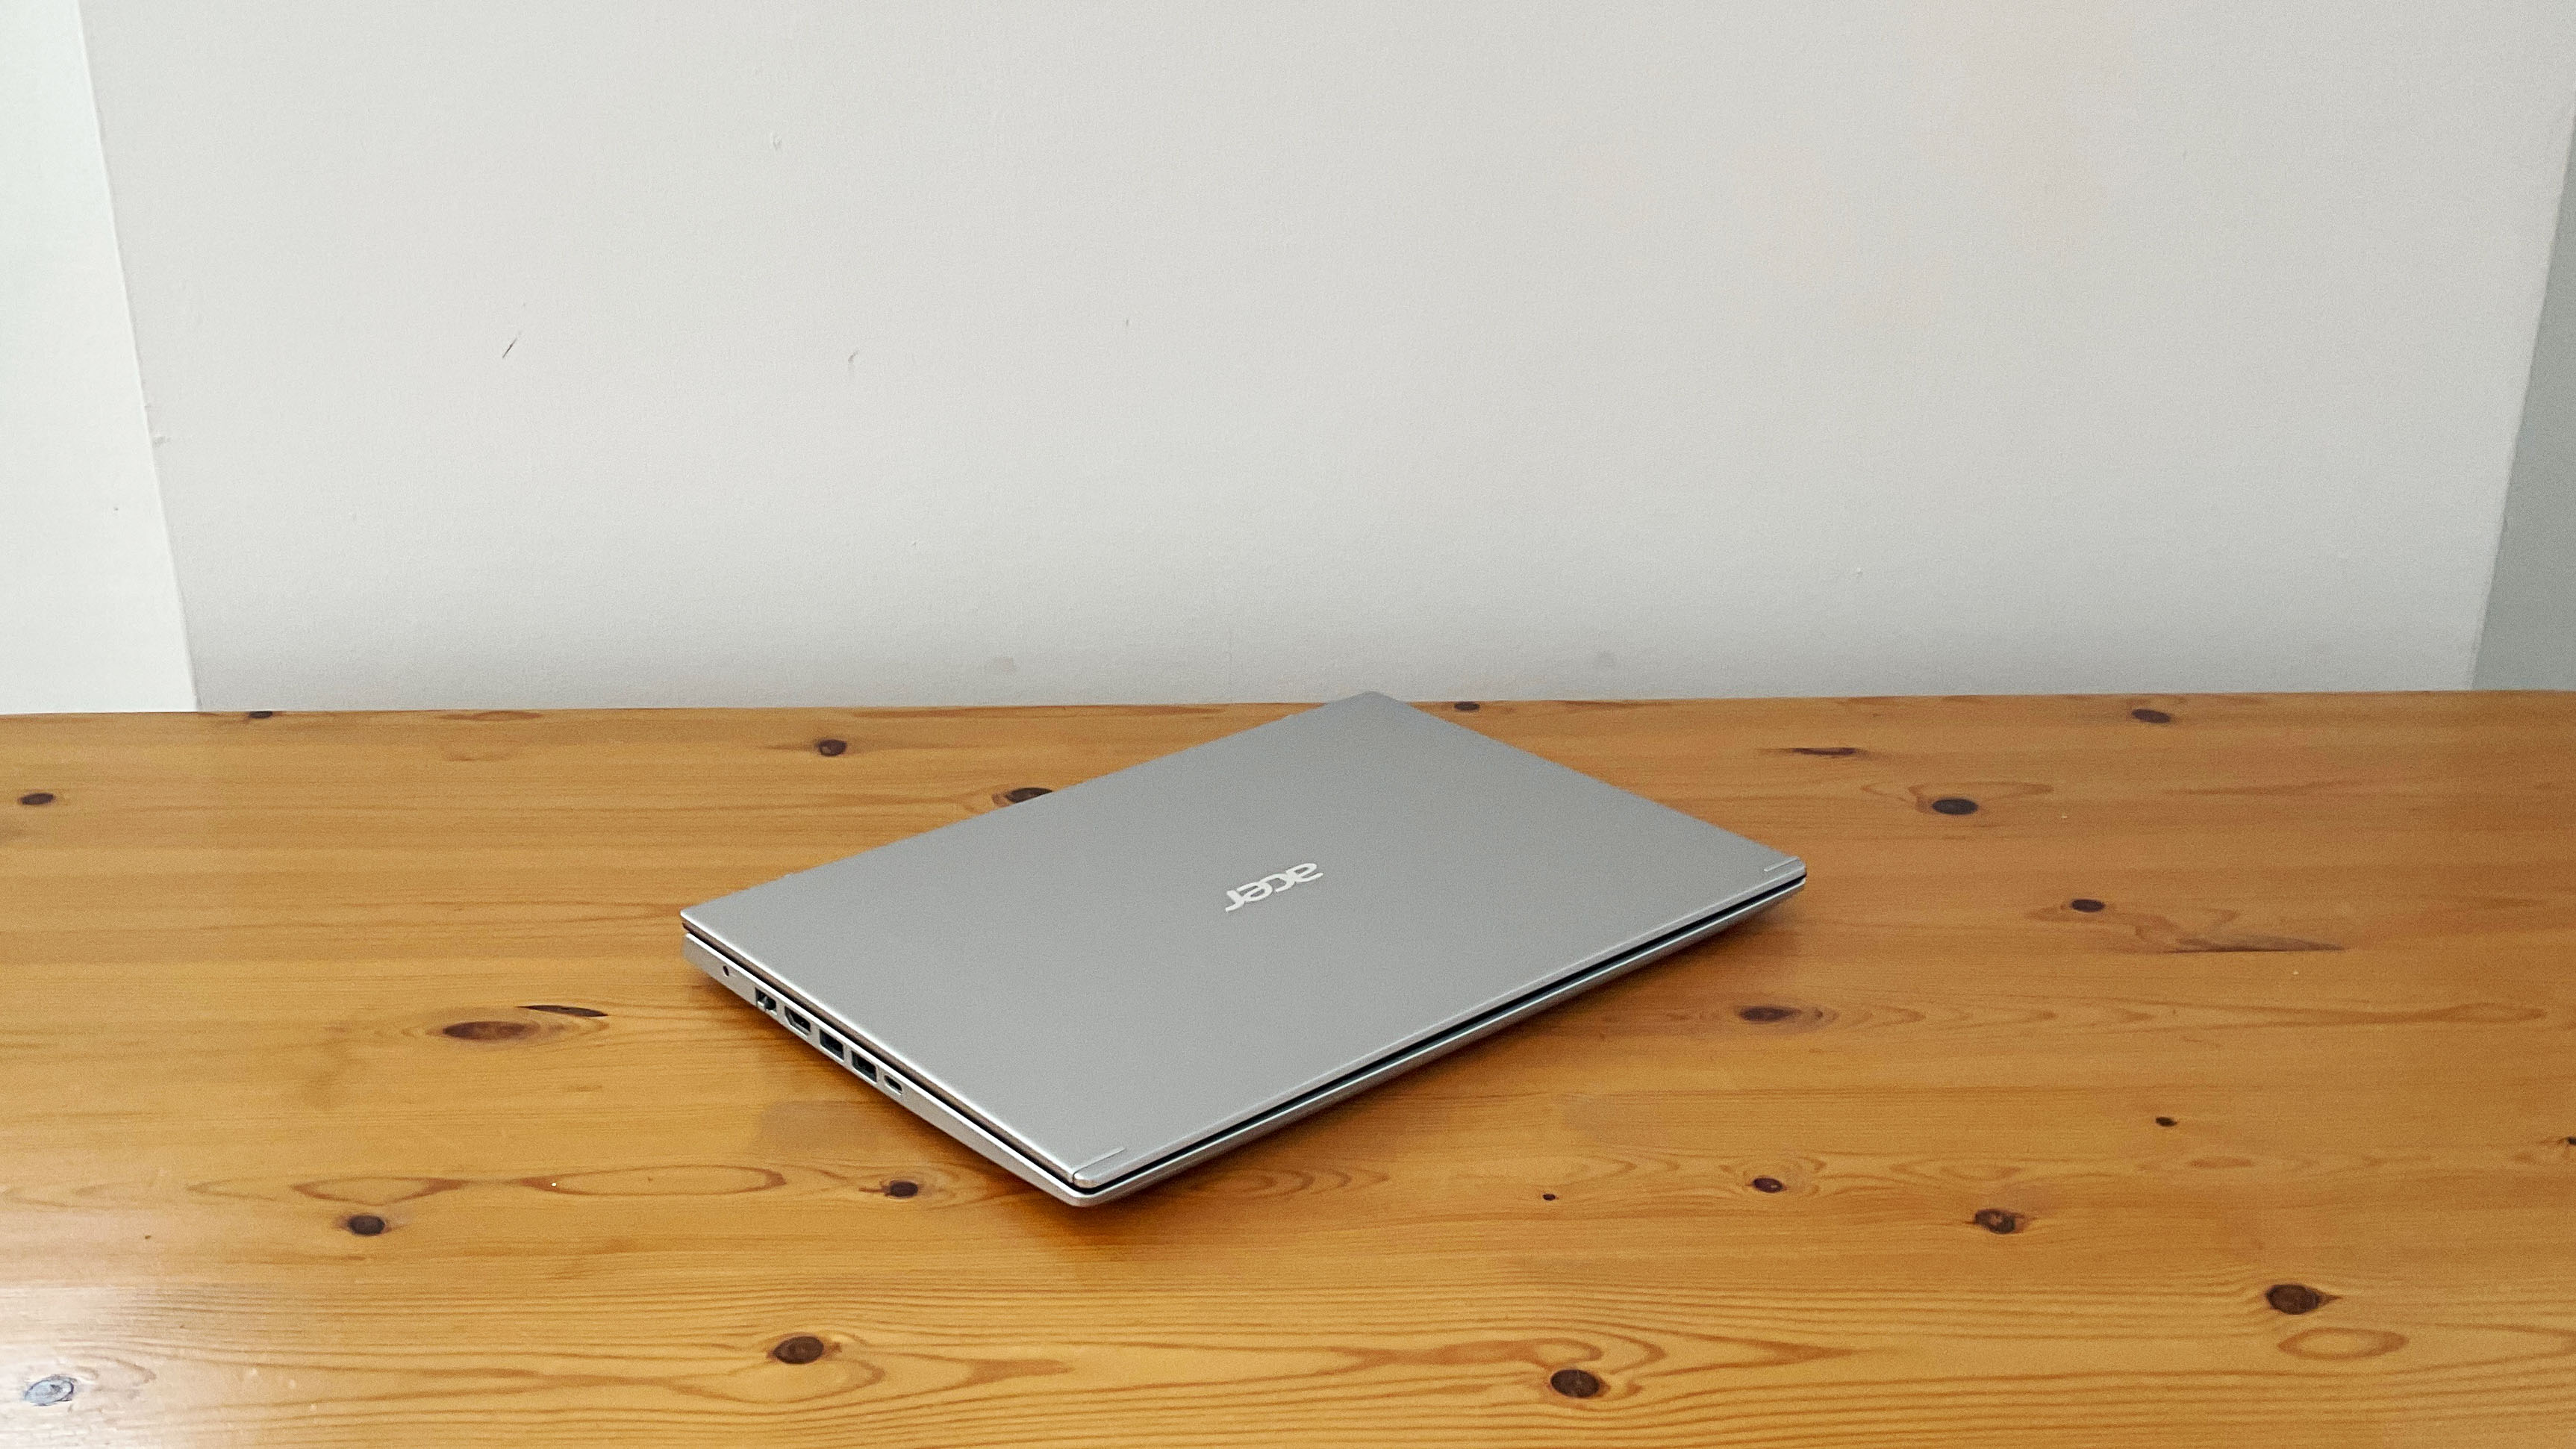 Acer Aspire 5 laptop on desktop, lid closed